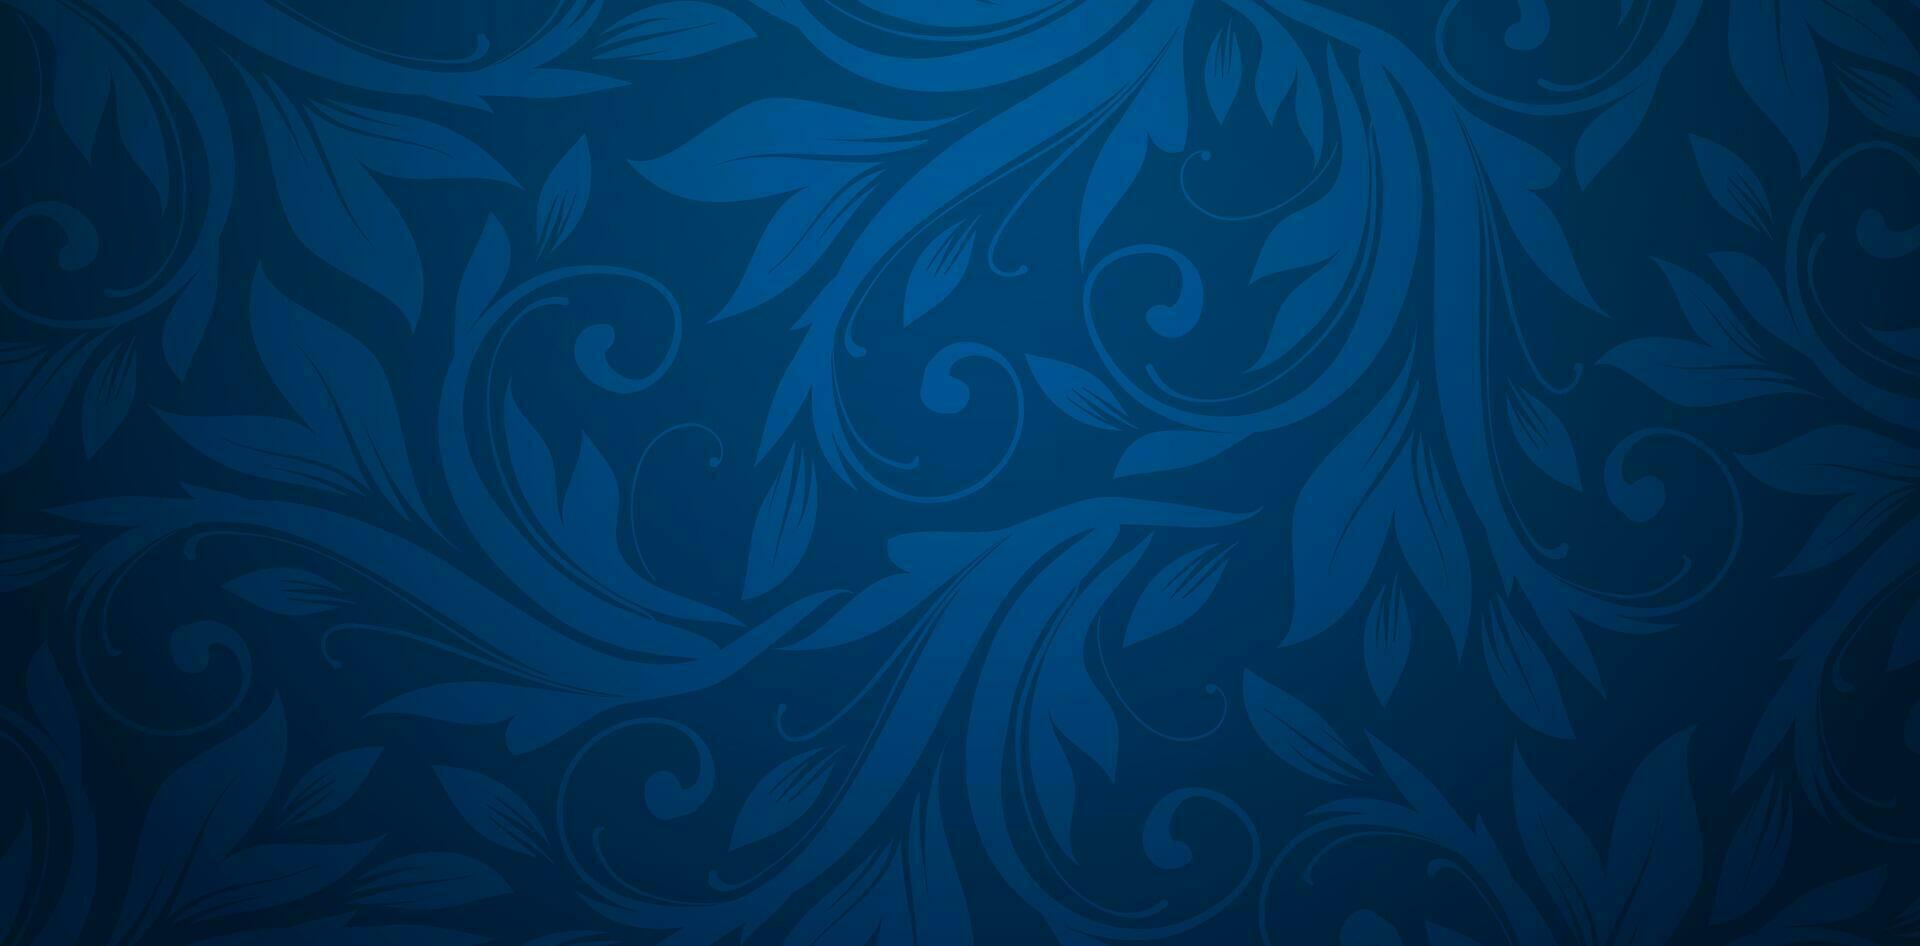 vektor illustration blå bakgrund med dekorativ blommig mönster för presentationer marknadsföring, däck, annonser, böcker täcker, digital gränssnitt, skriva ut design mallar material, bröllop inbjudan kort